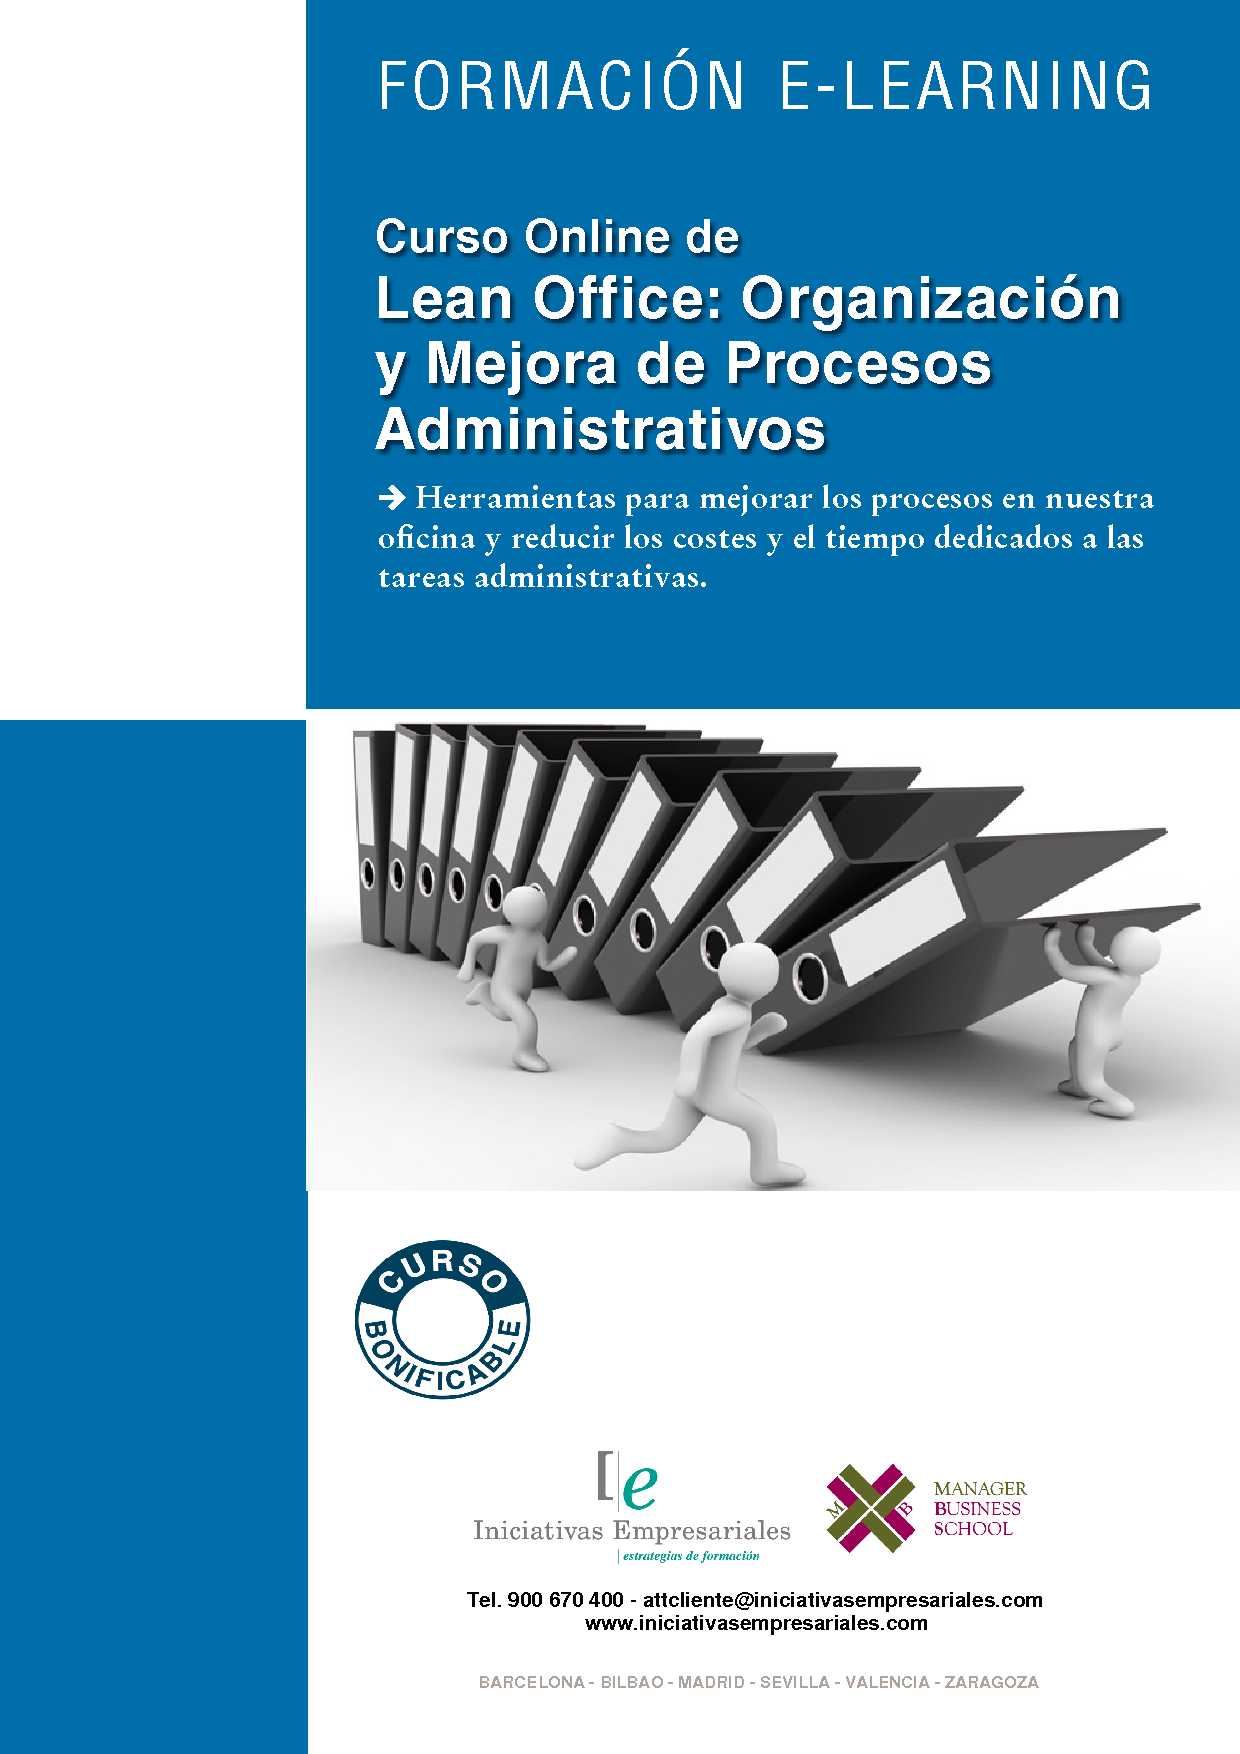 Lean Office: Organización y Mejora de Procesos Administrativos